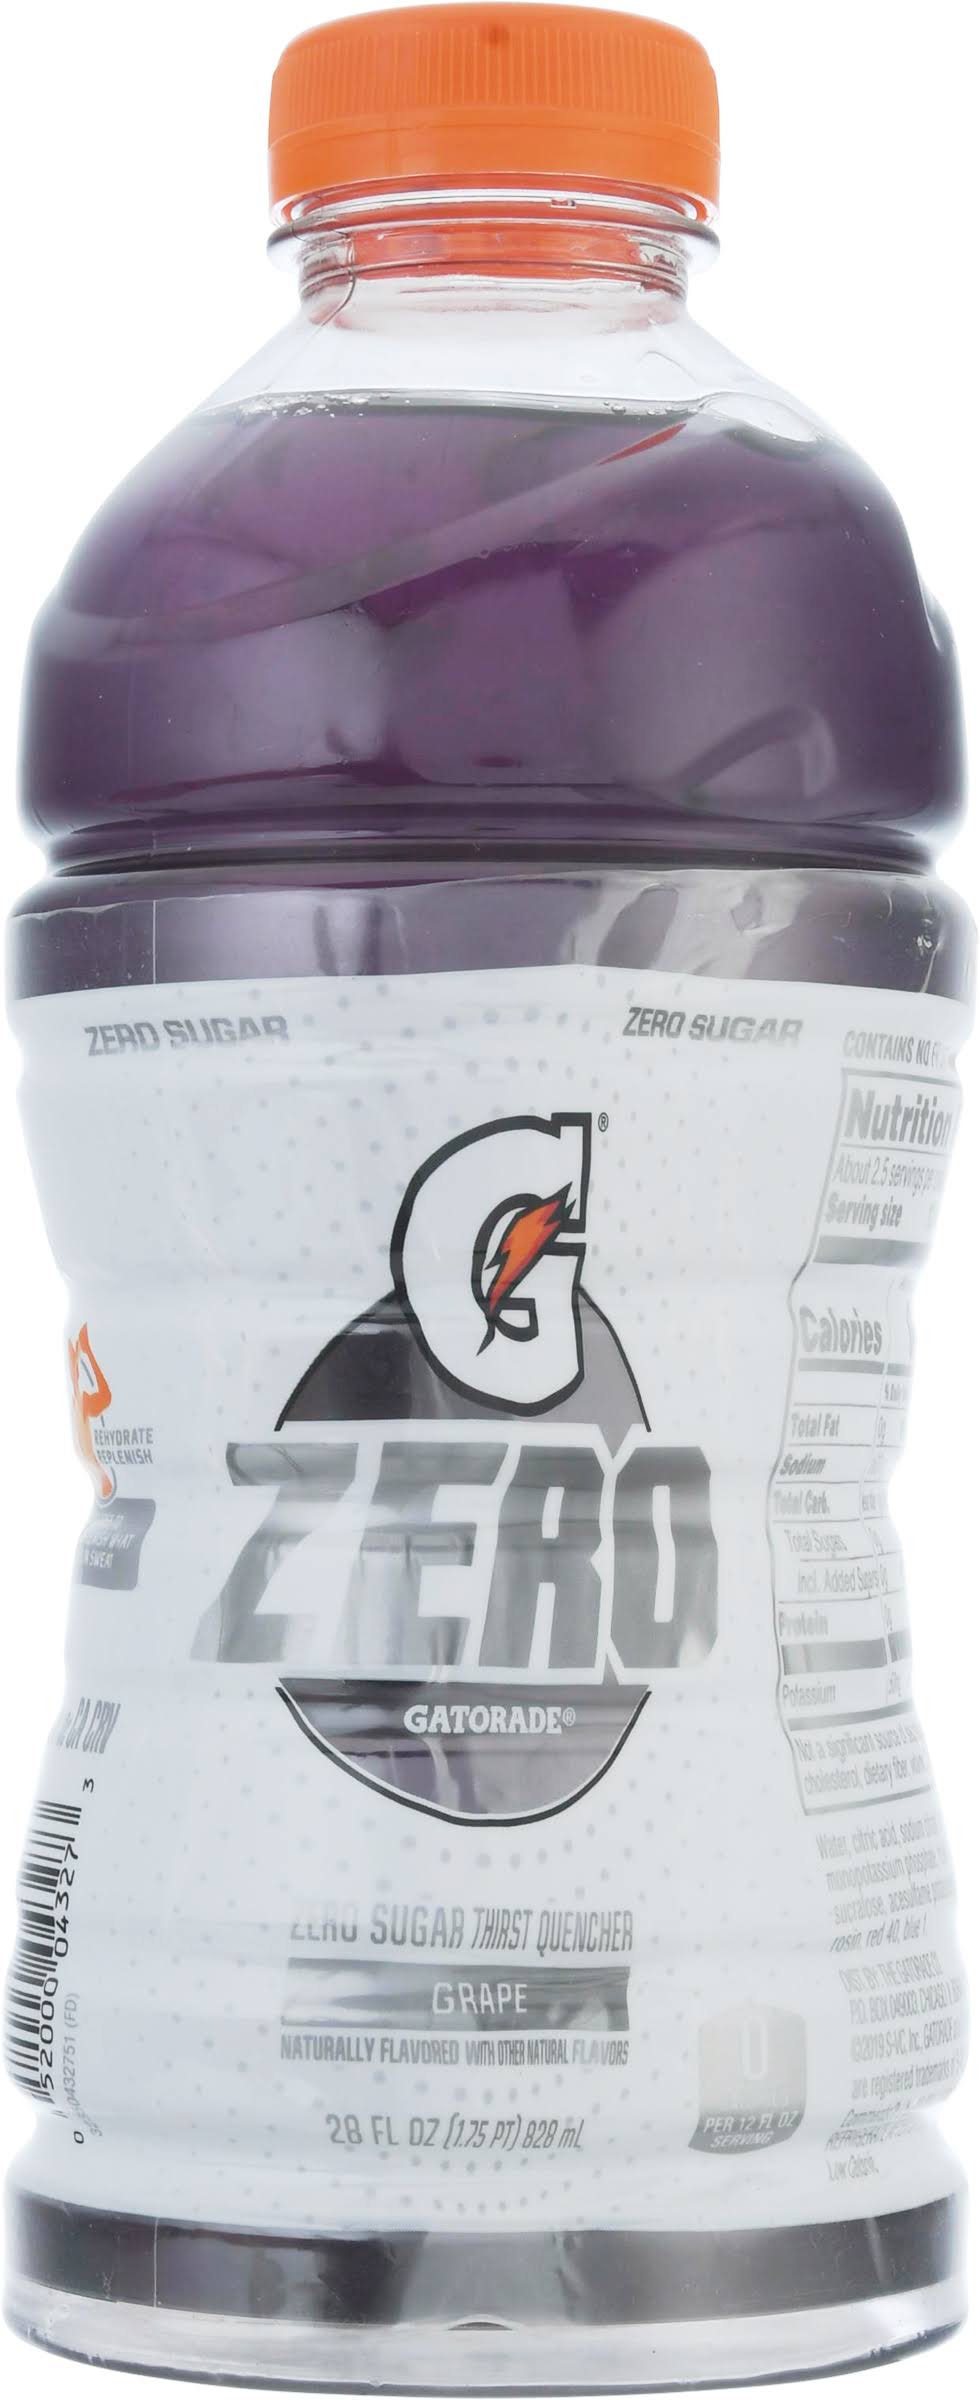 Gatorade Zero Thirst Quencher, Grape - 28 fl oz